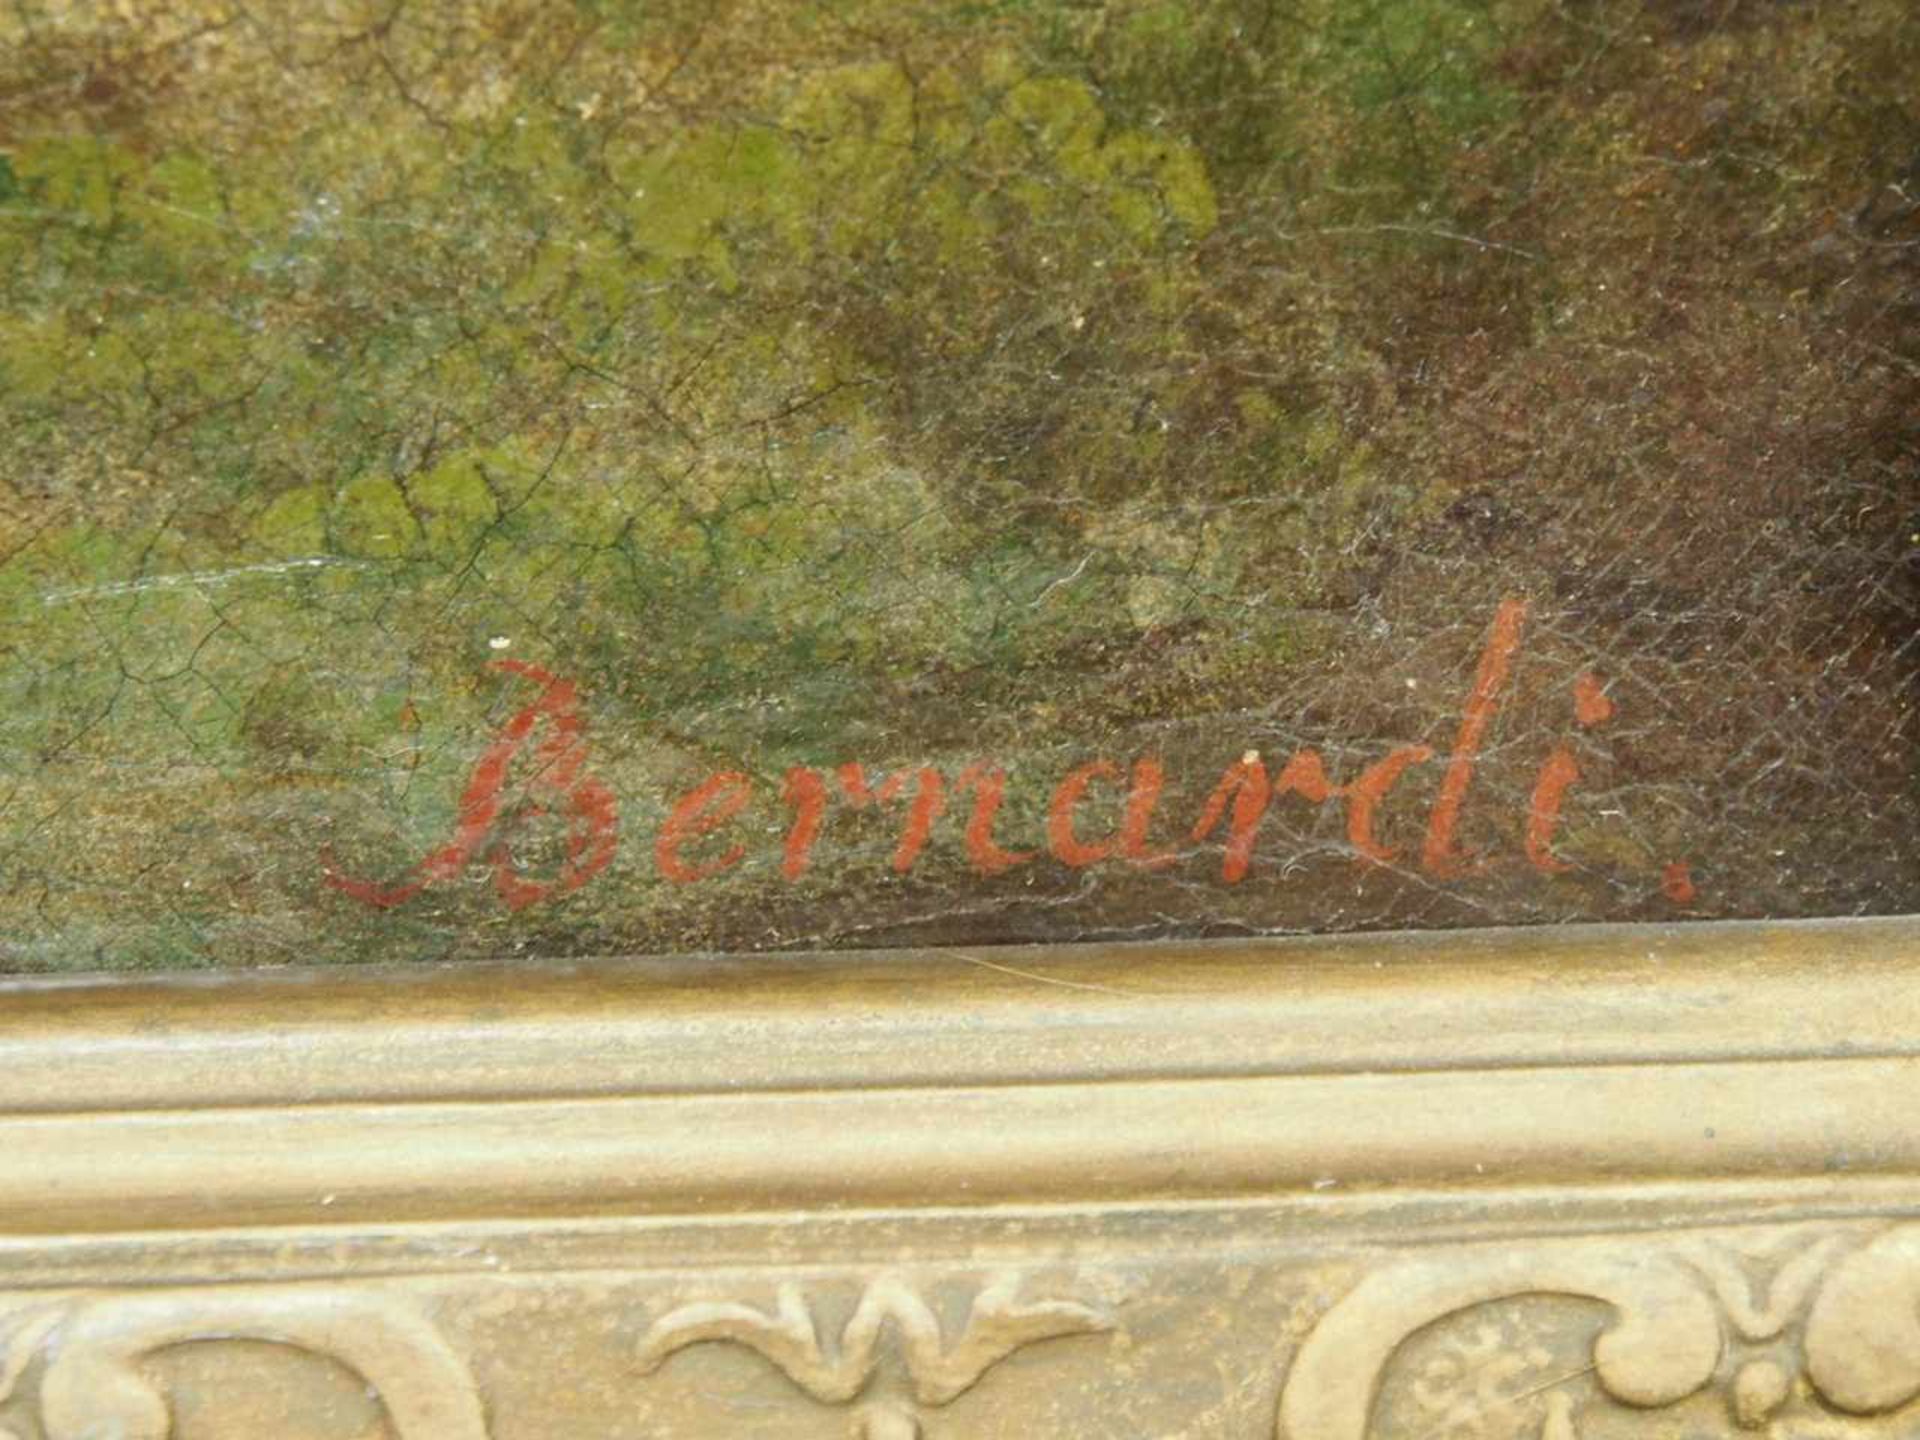 BERNARDI, Joseph1826-1907Im Berner OberlandÖl auf Leinwand, signiert unten rechts, 53 x 88 cm, - Image 3 of 3